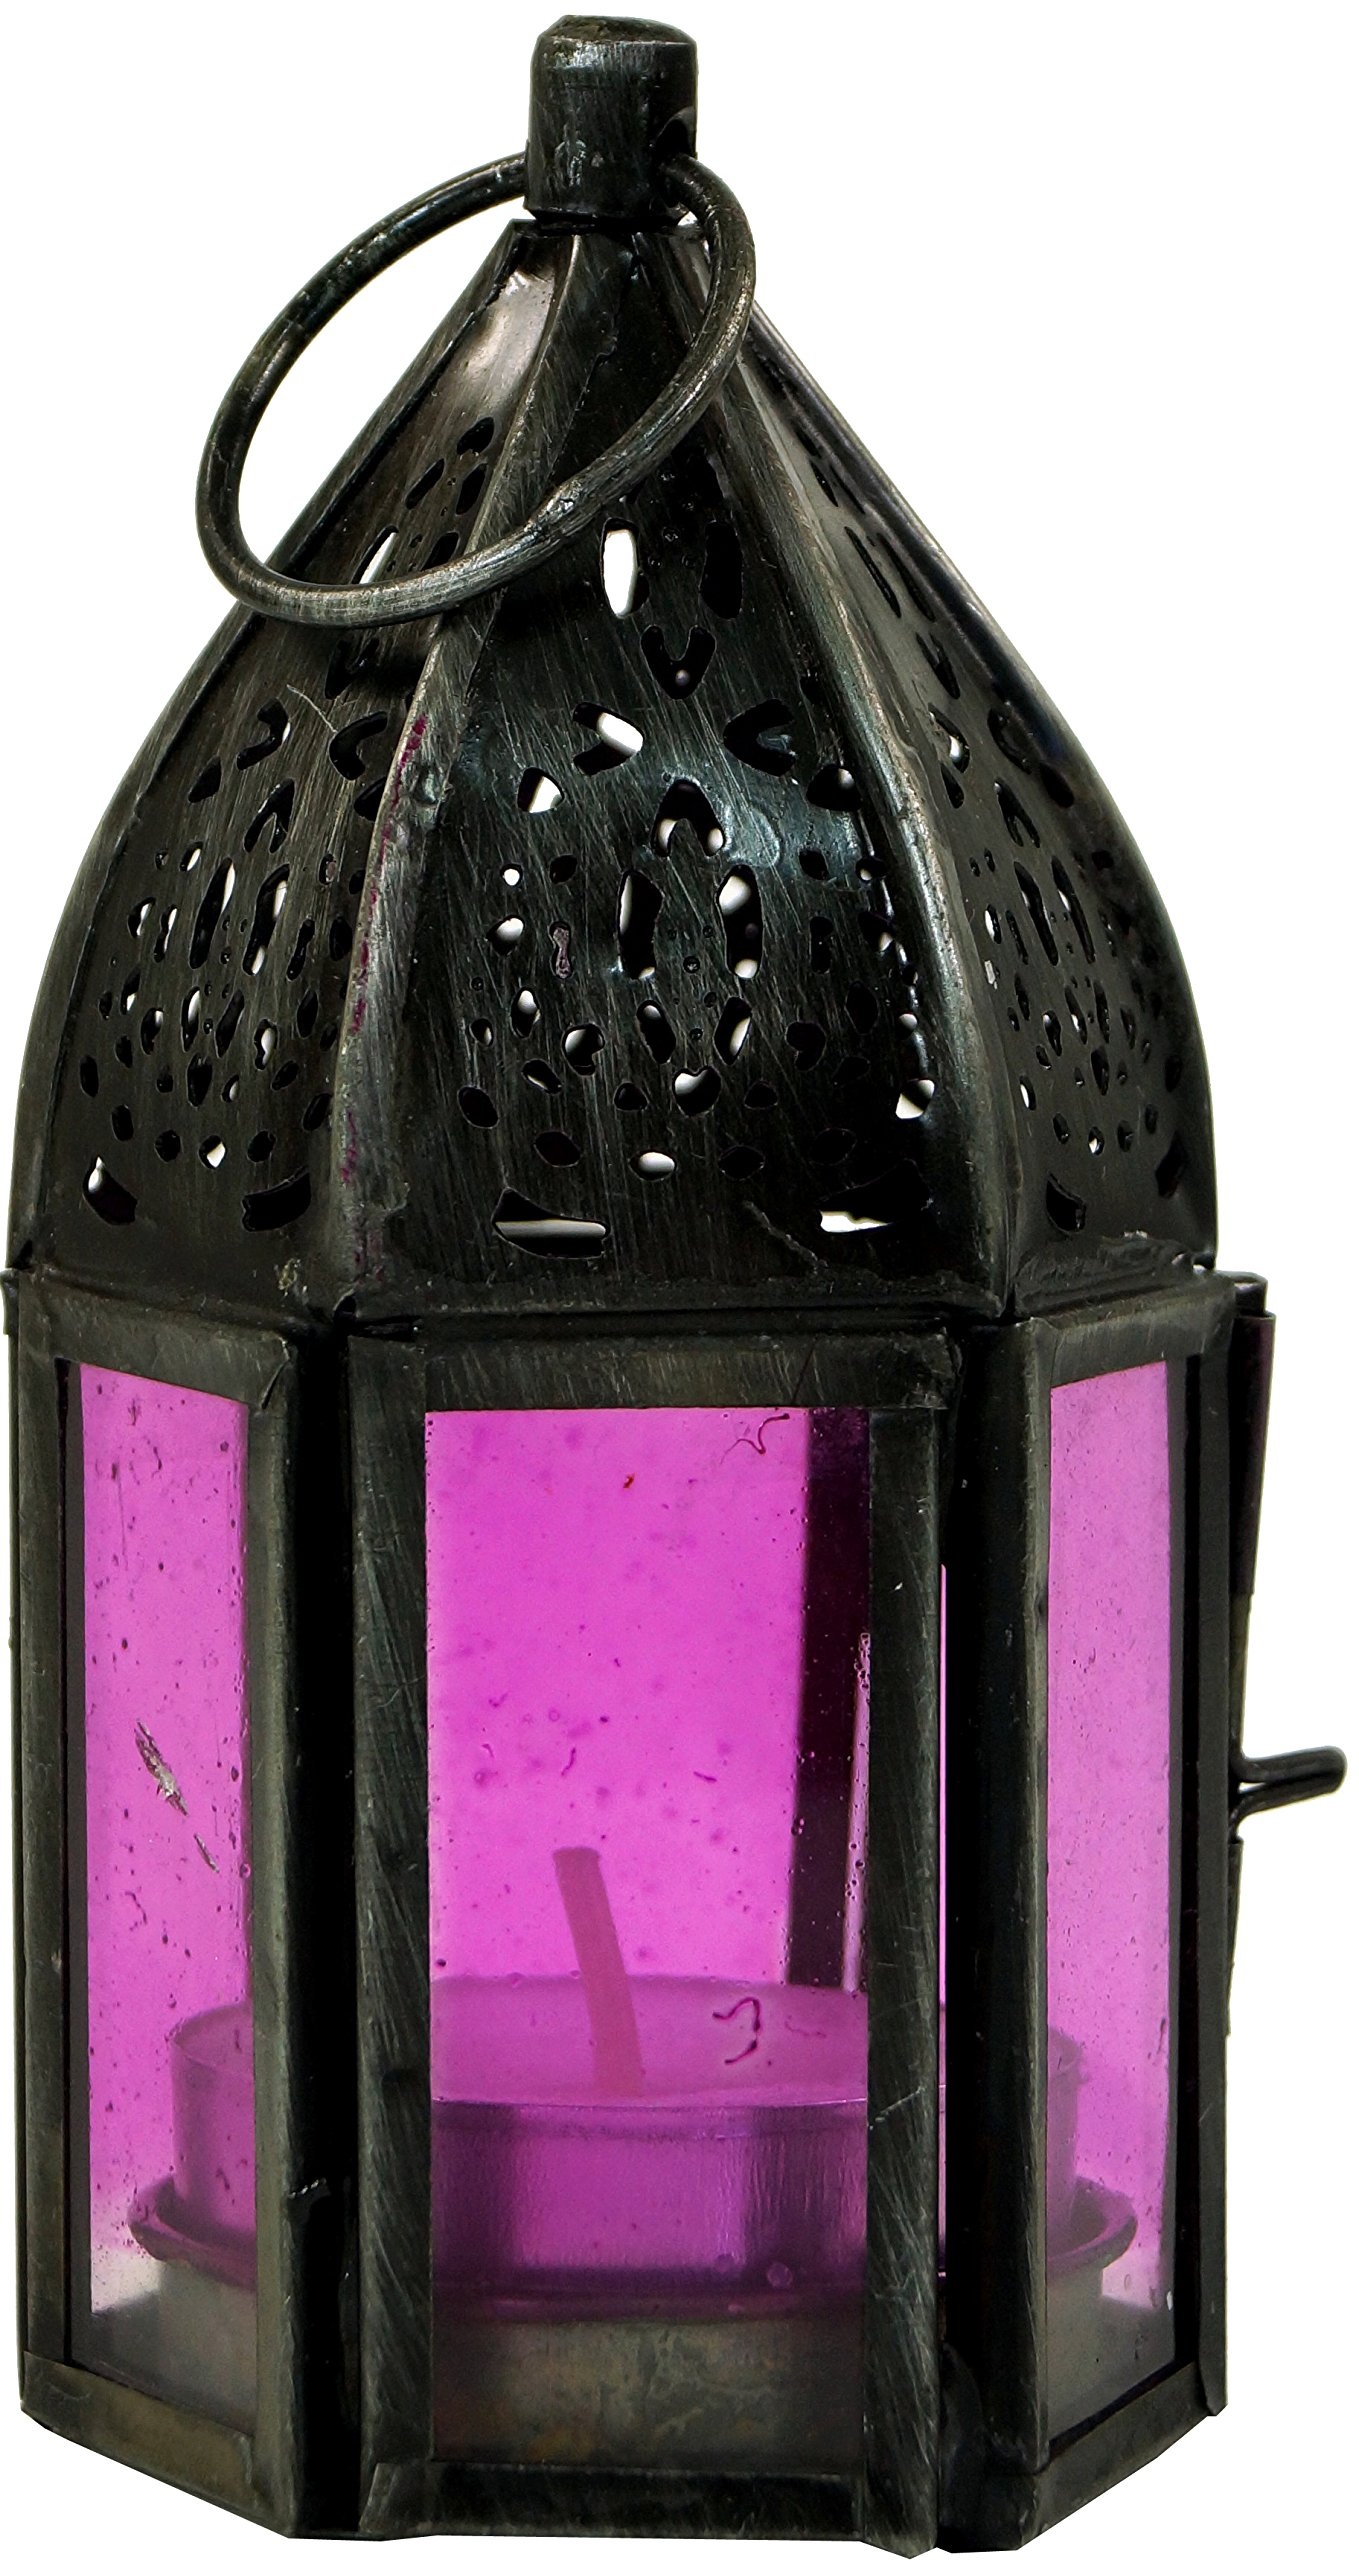 GURU SHOP Orientalische Metall/Glas Laterne in Marrokanischem Design, Windlicht Klein, Pink, Farbe: Pink, 11,5x5x5 cm, Orientalische Laternen